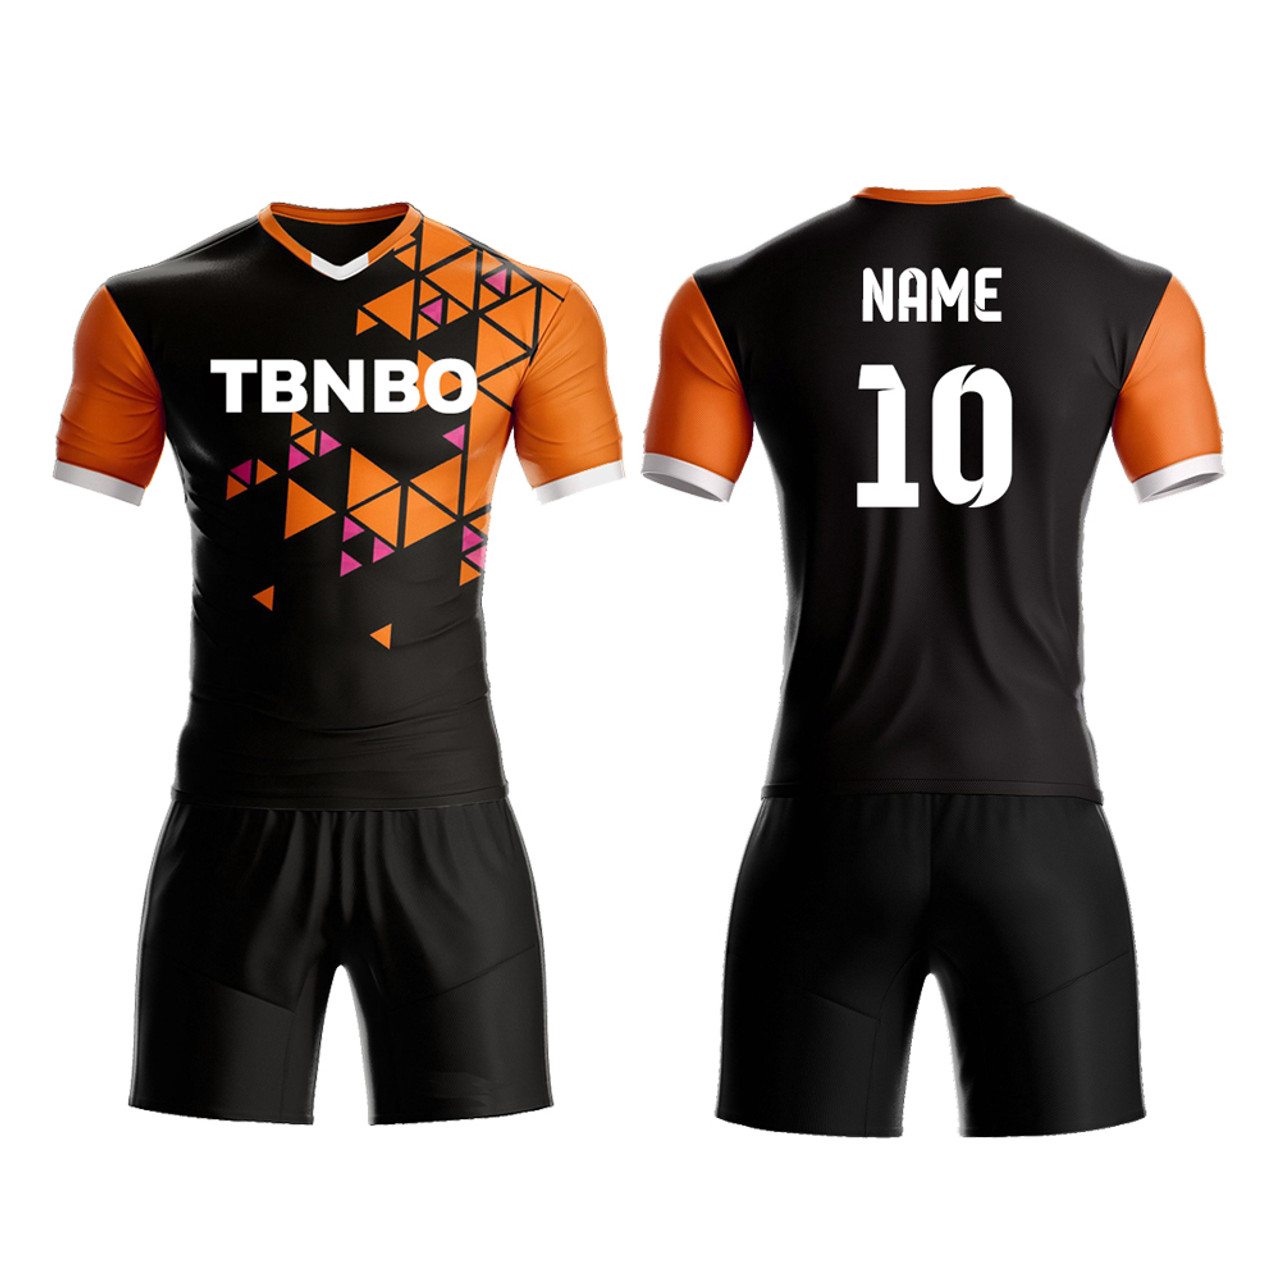 Mens Soccer Uniforms - Custom Jerseys